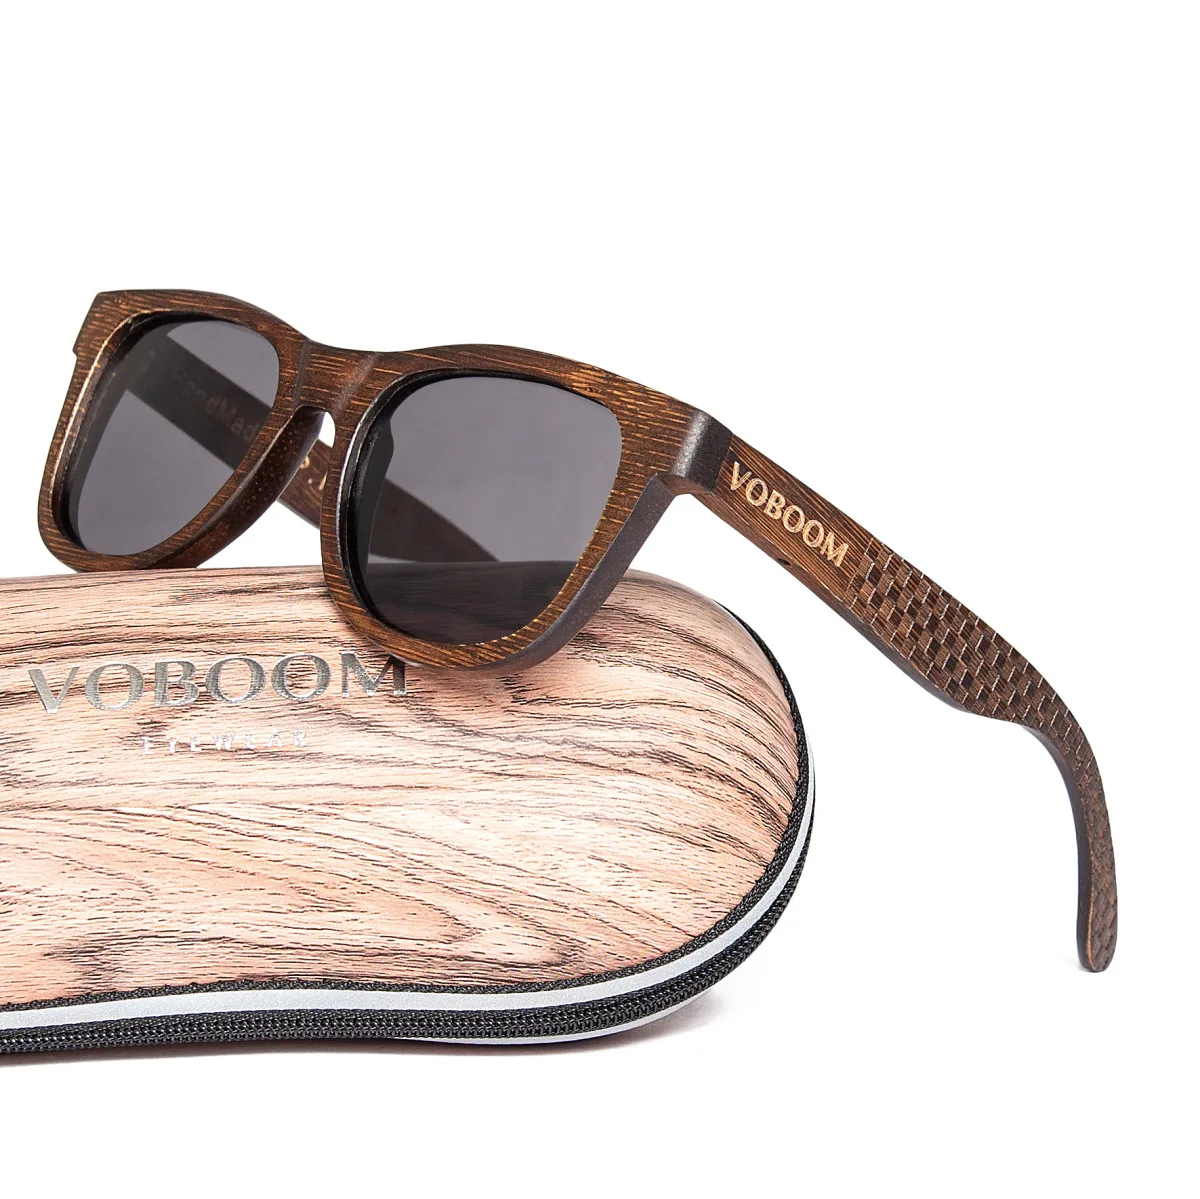 

Солнцезащитные очки Voboom мужские/женские поляризационные, роскошные винтажные солнечные очки в оправе из 100% натурального бамбука, с защитой...